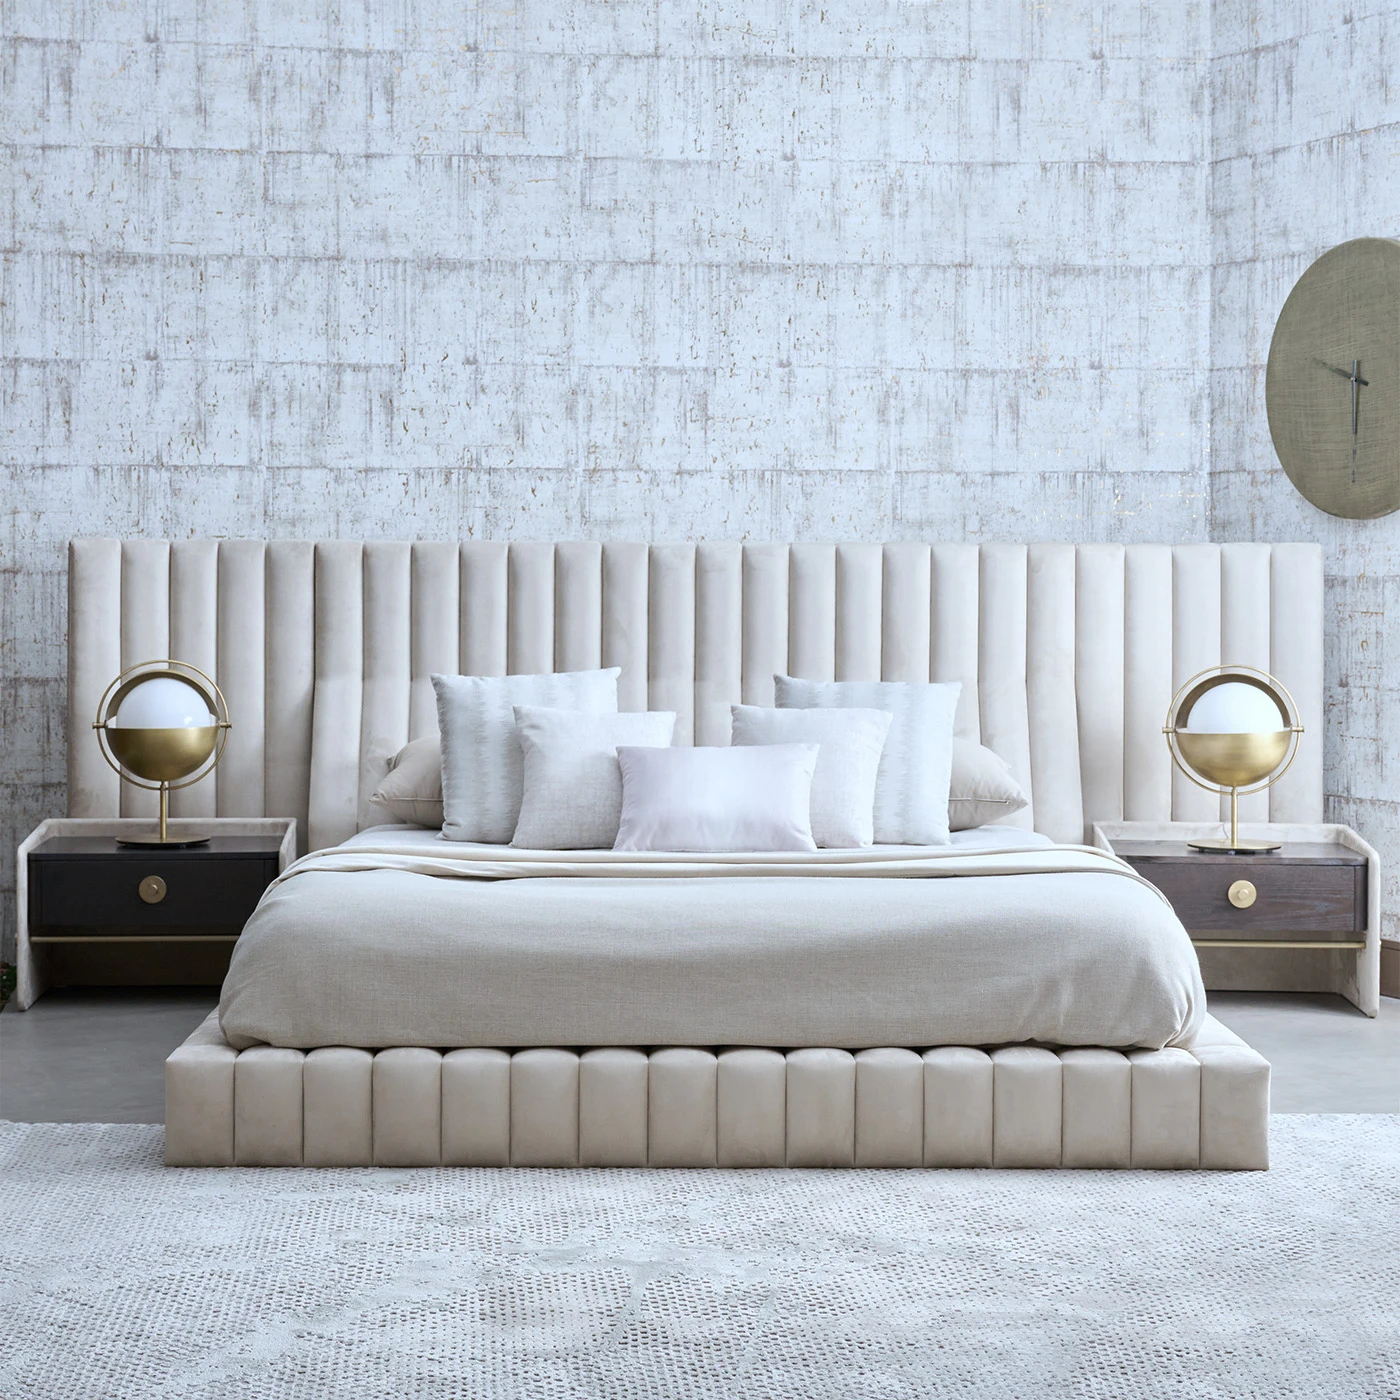 Роскошная тканевая кровать оптовый набор мебели для спальни отеля двуспальные деревянные кровати King size с кобурами